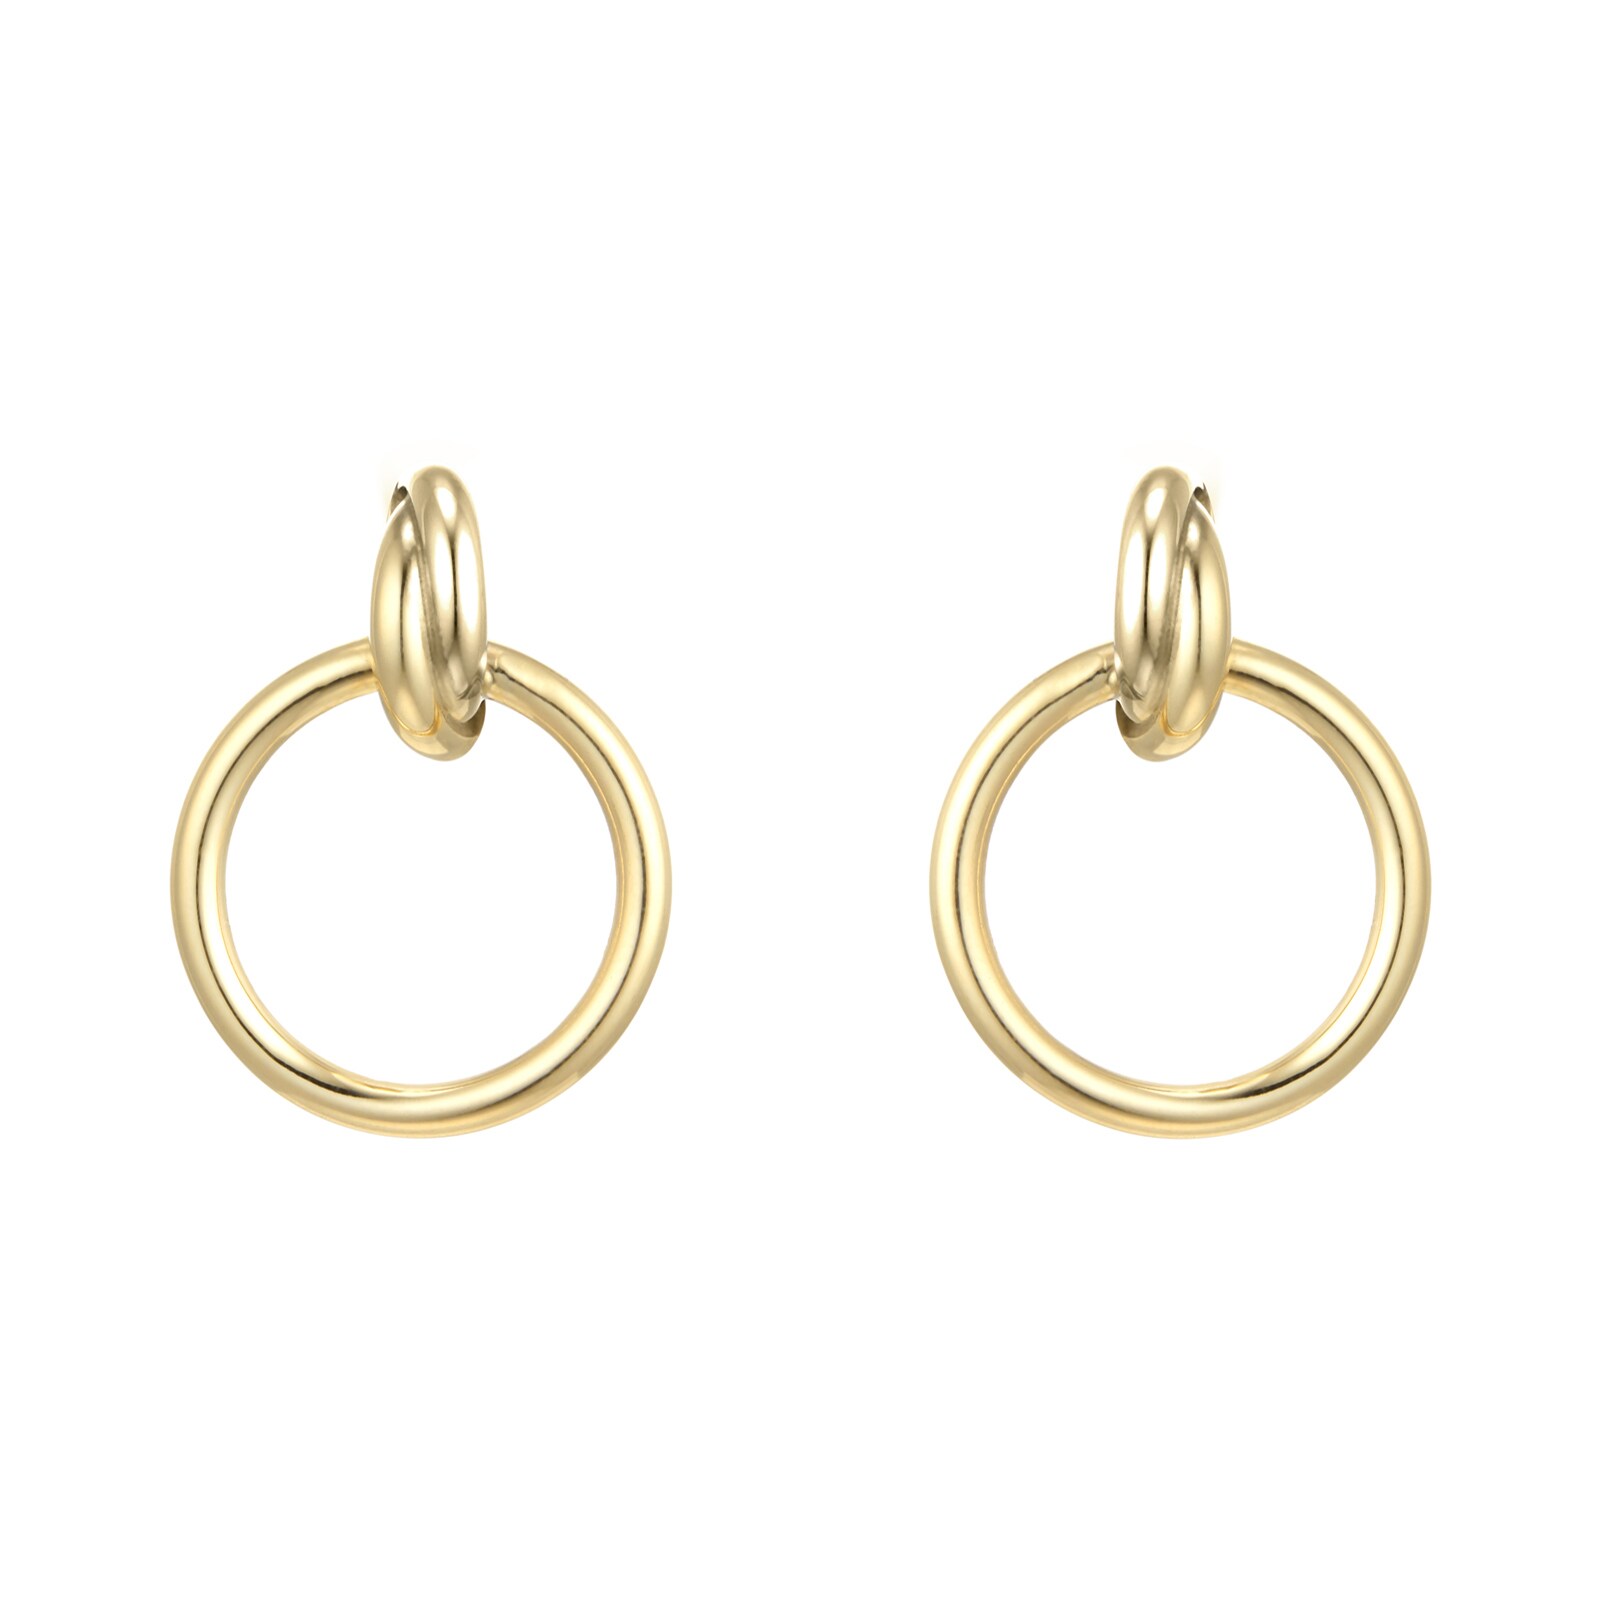 Earrings Jewellery Sale | Luxury Womens Earrings on Offer UK | Goldsmiths